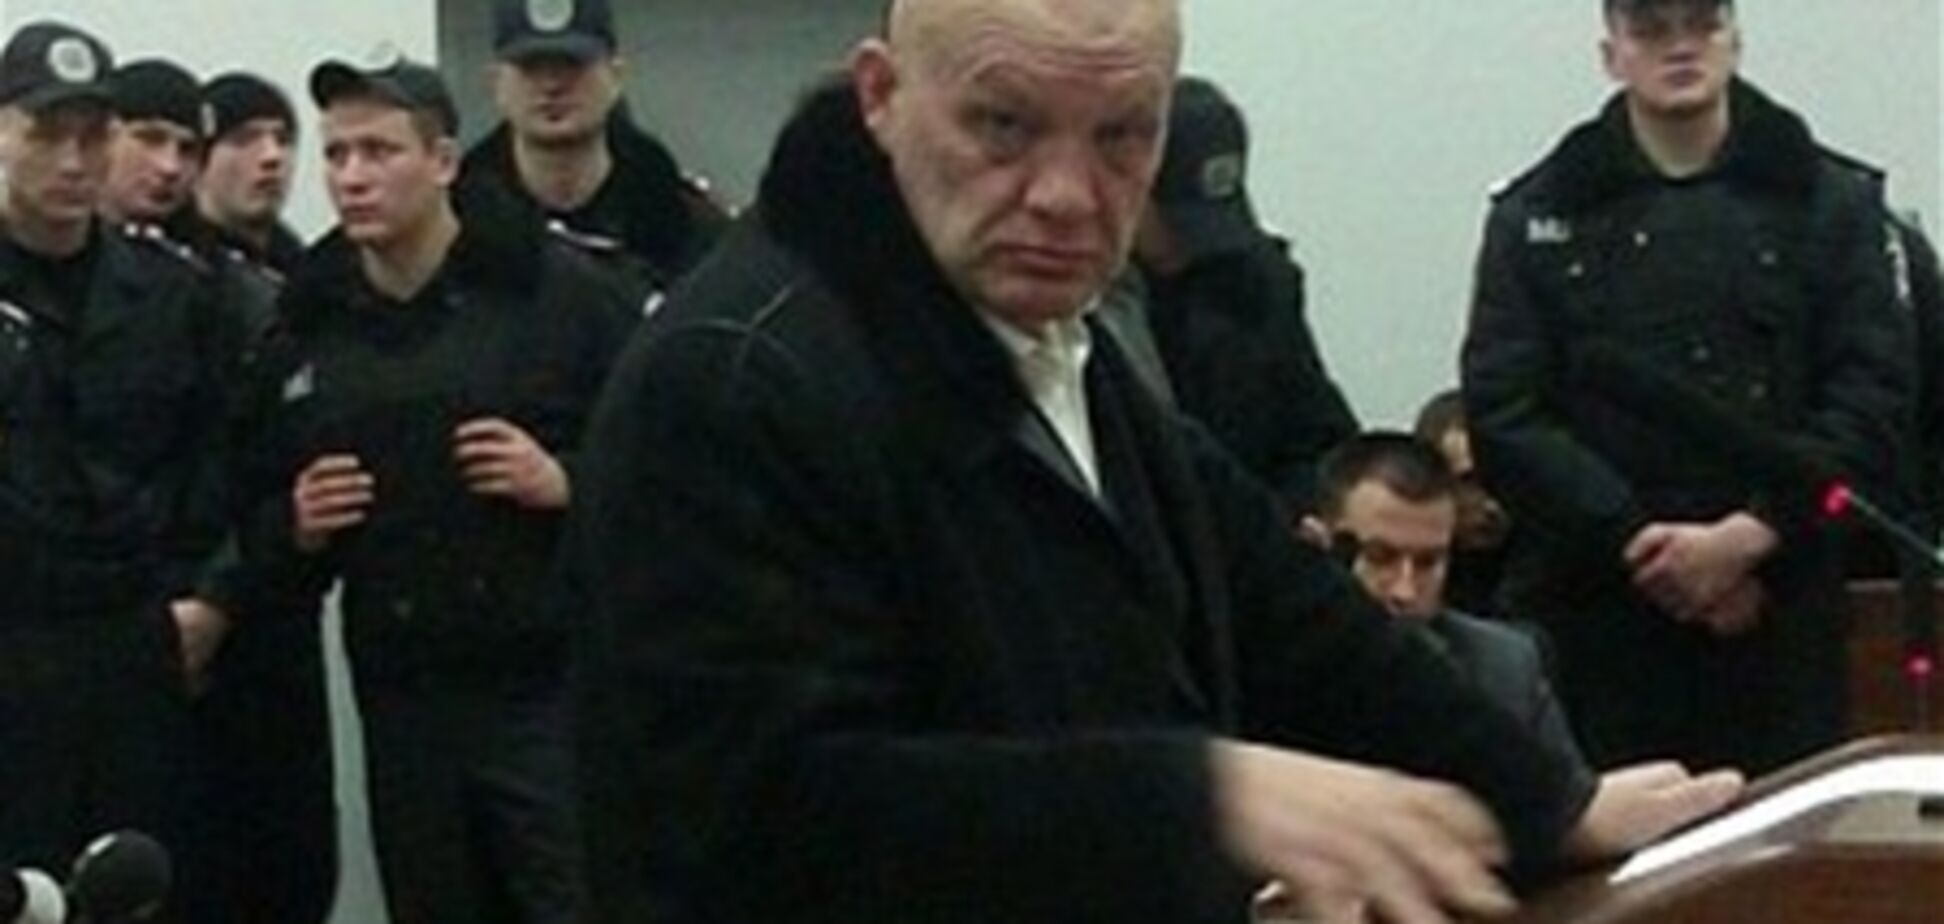 Щербаня 'замовив' Лазаренко в інтересах Тимошенко - свідок